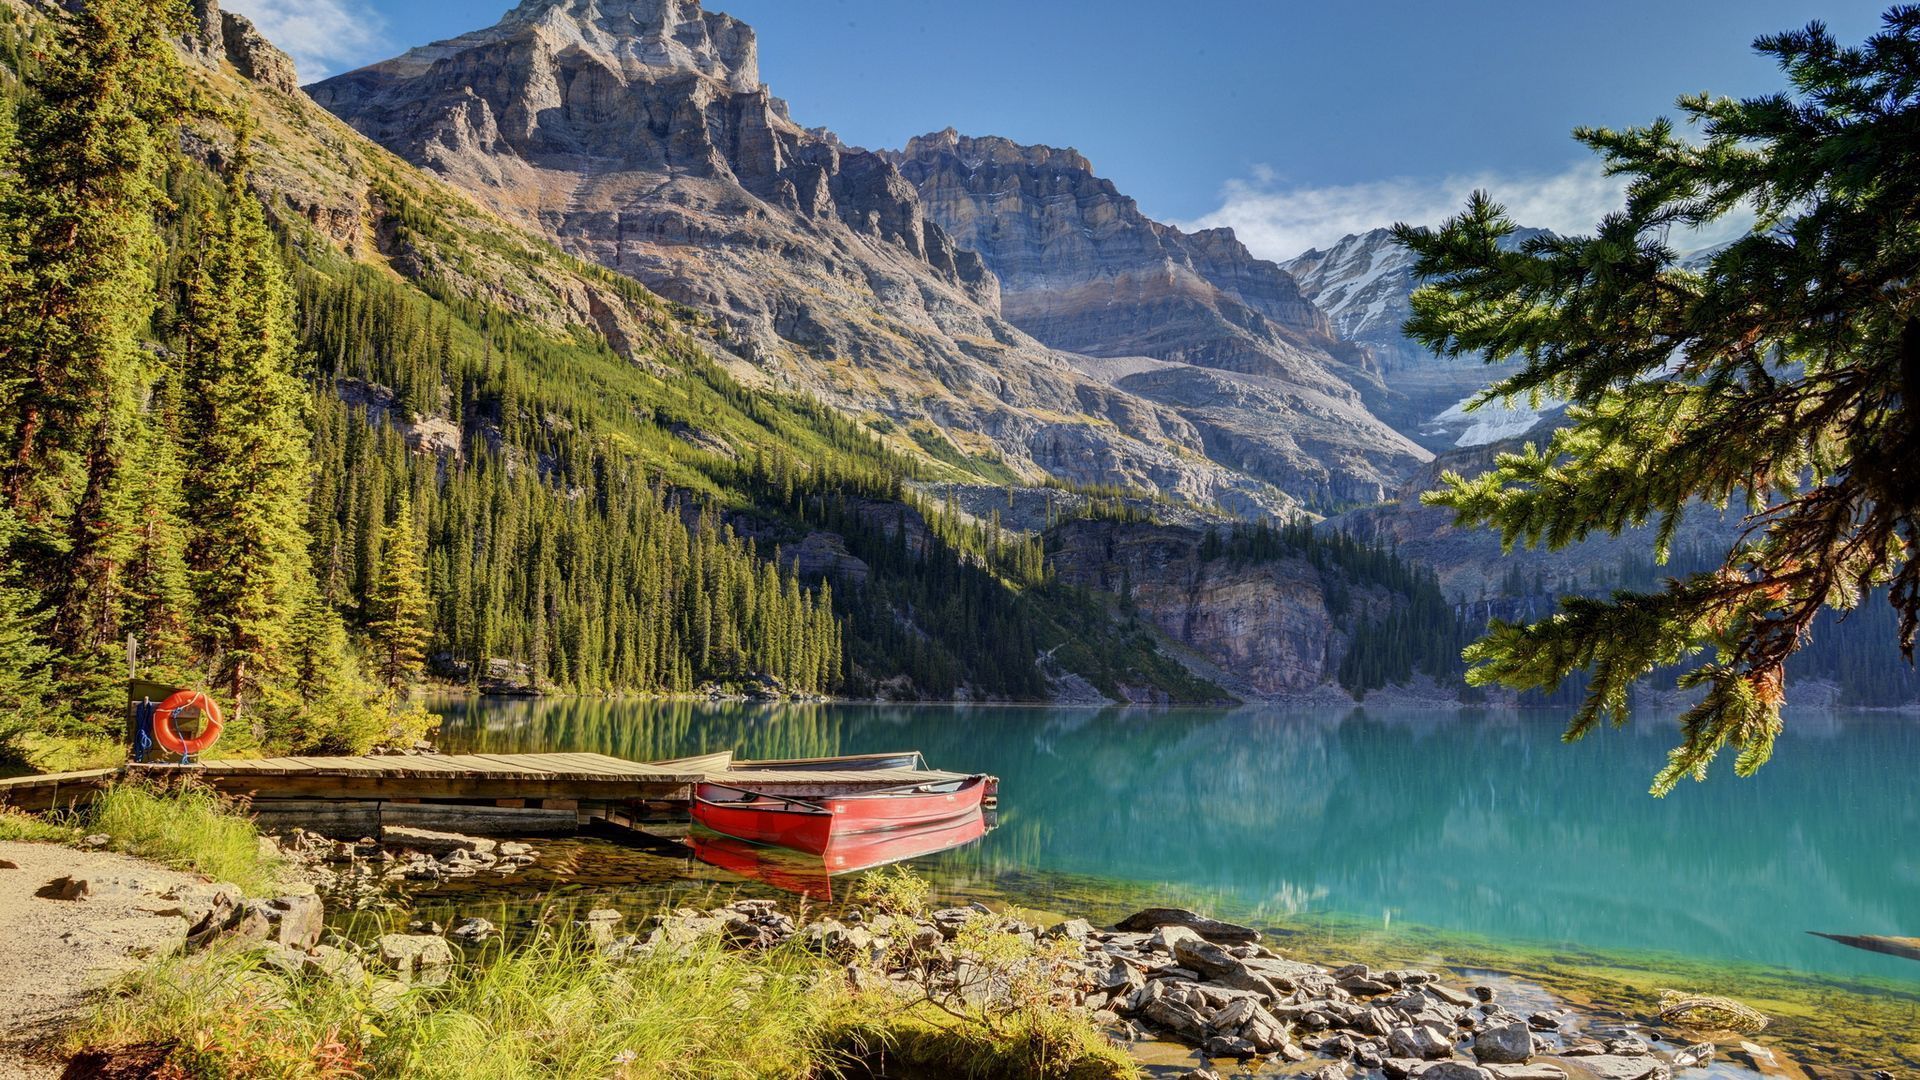 Schönste Hintergrundbild 1920x1080. HD Desktop Wallpaper: Natur, Ein Boot, Boot, Schöne Landschaft, See, Mountains Kostenloses Bild Herunterladen